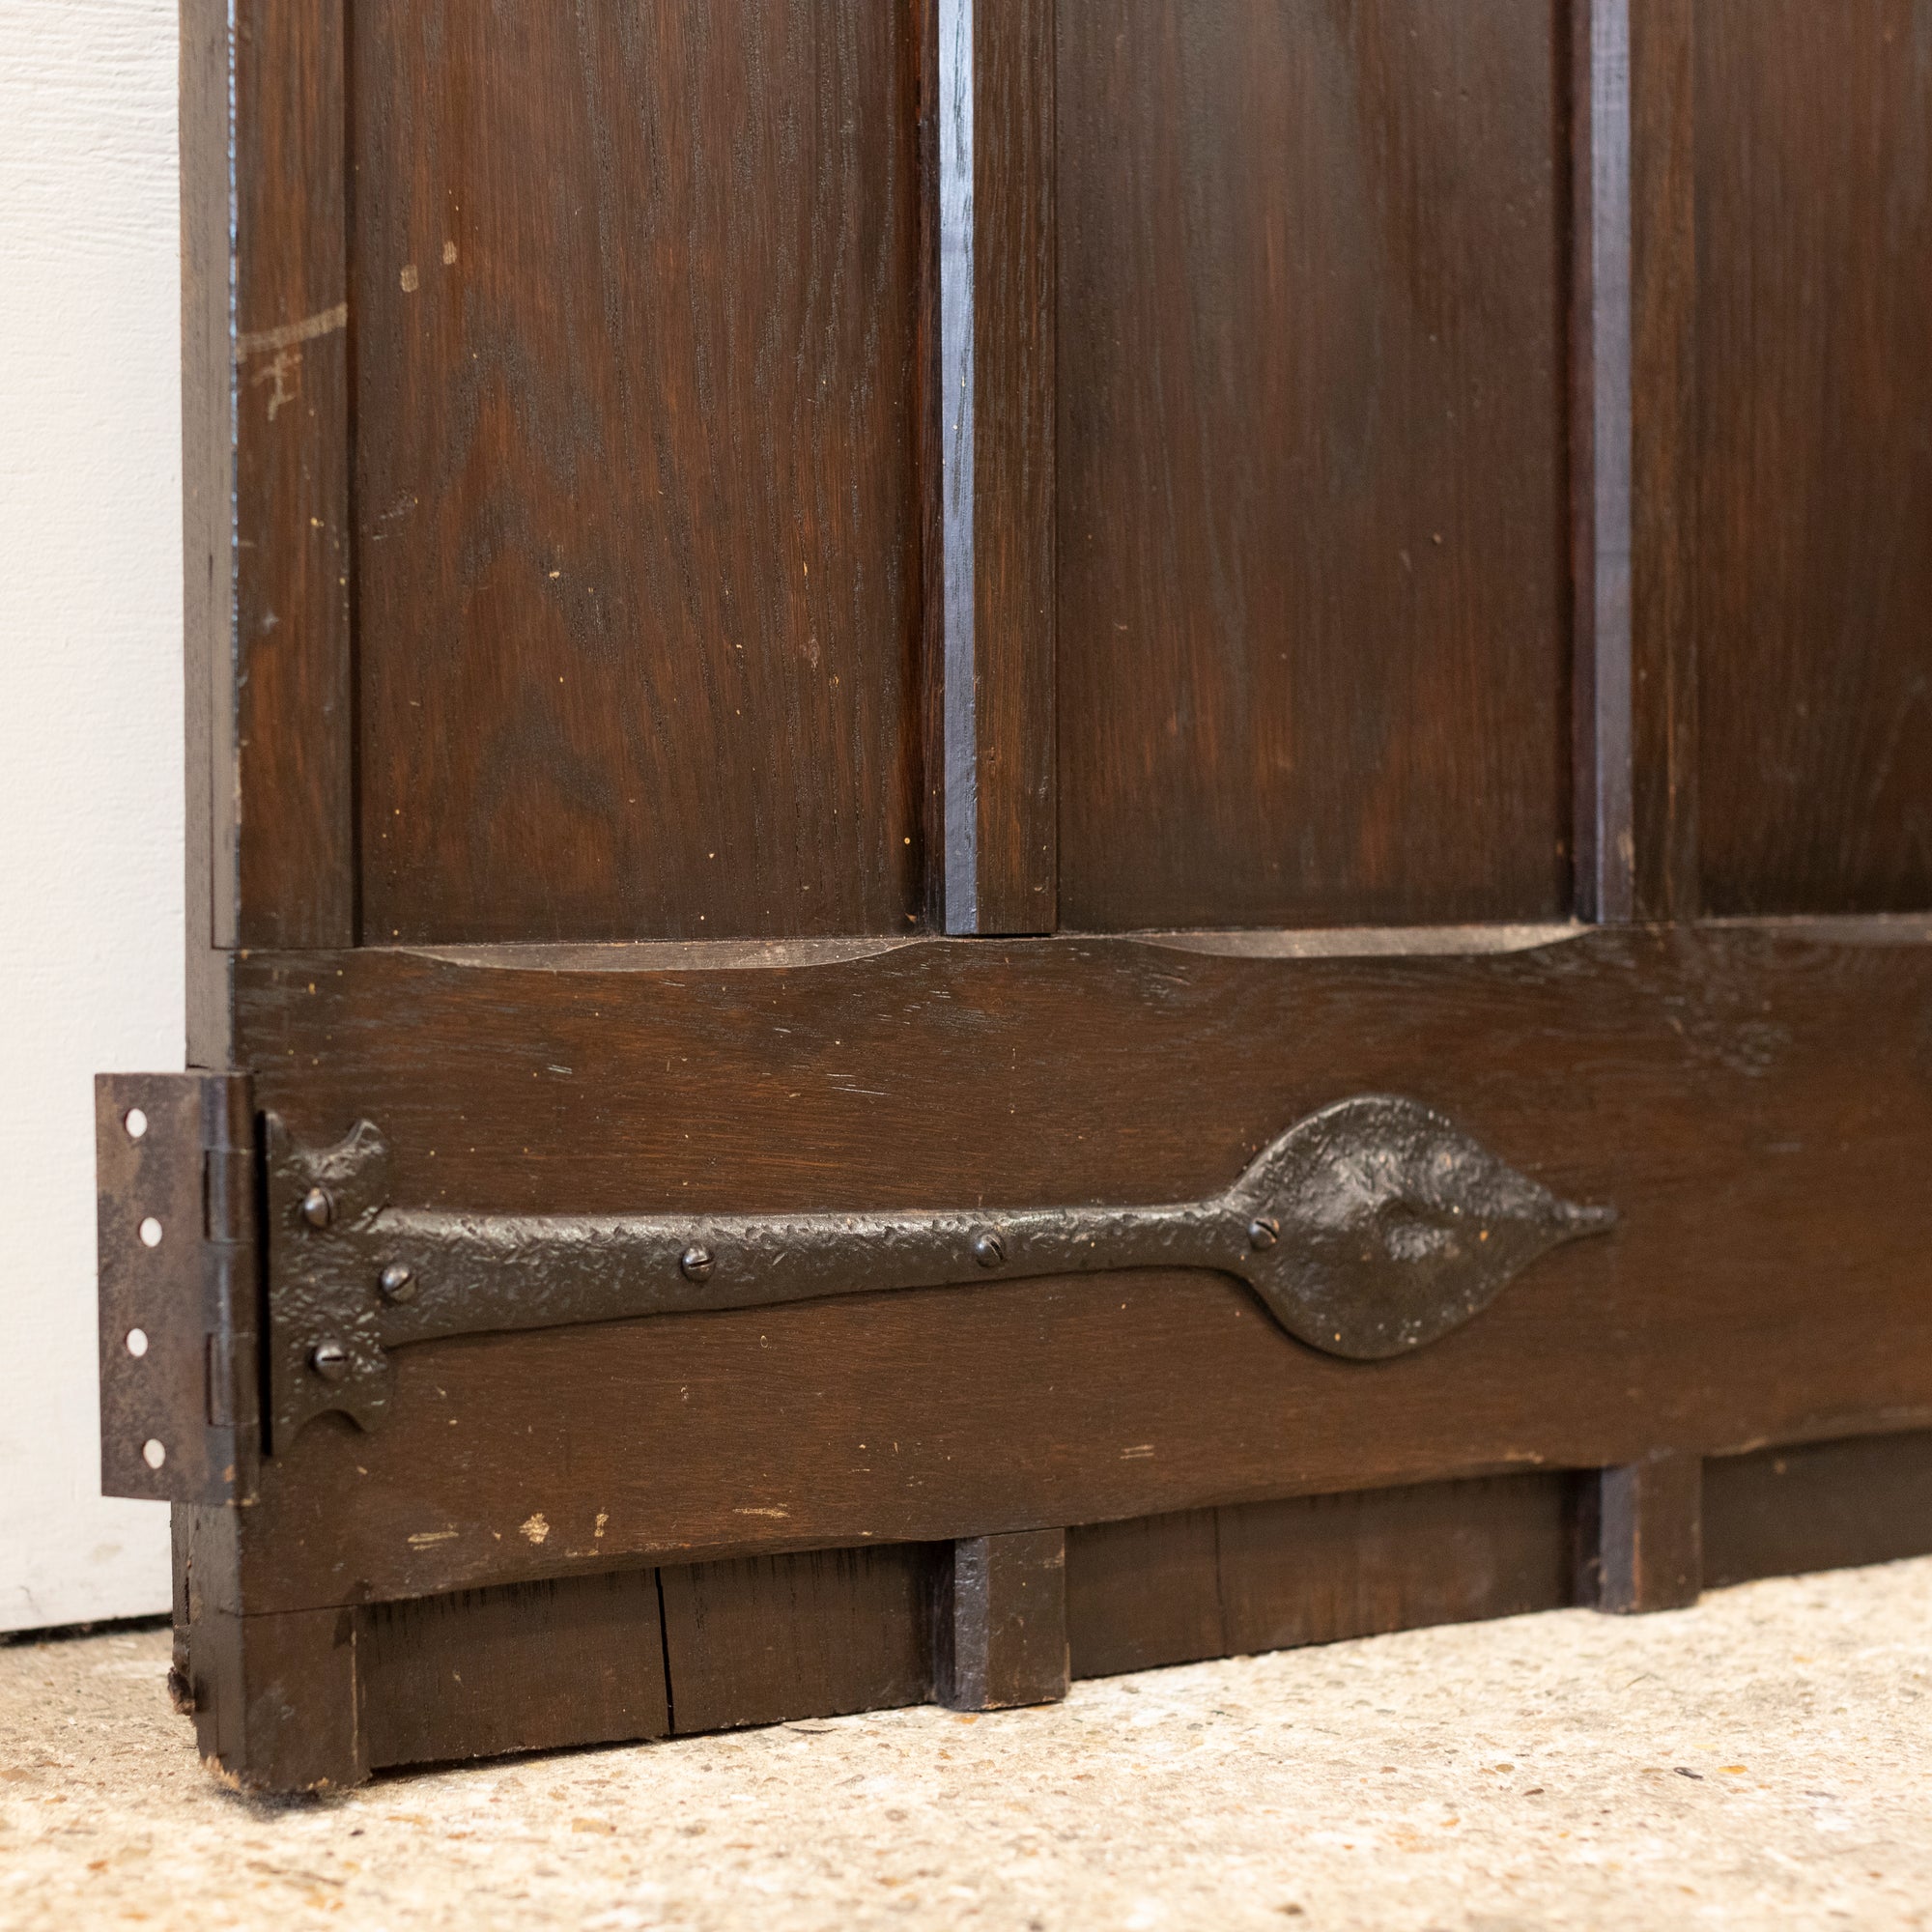 Antique Oak Latch Door - 202cm x 89.5cm | The Architectural Forum